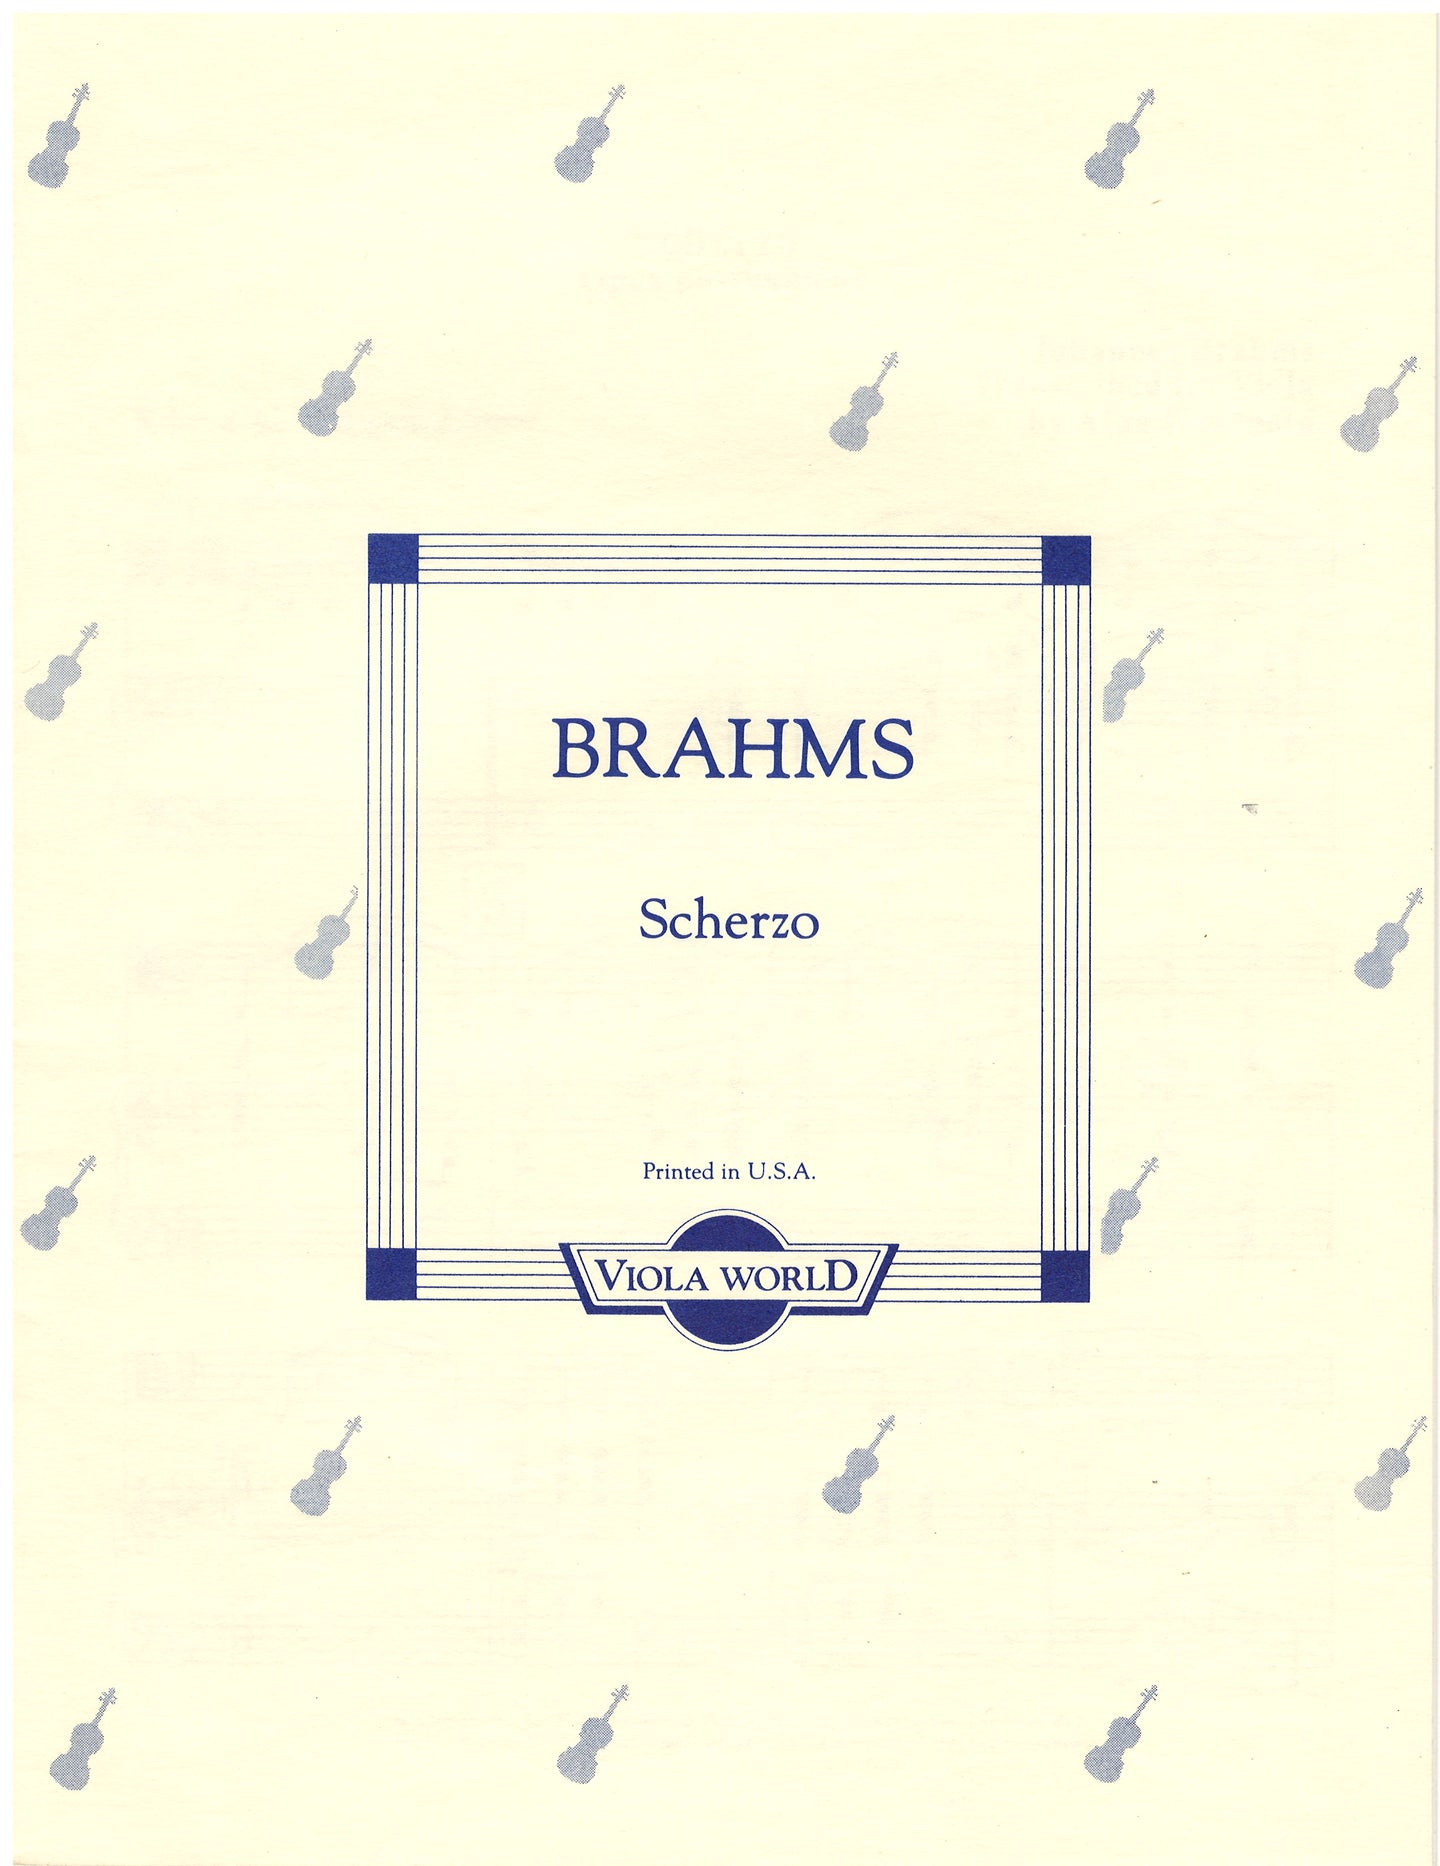 Brahms - Scherzo